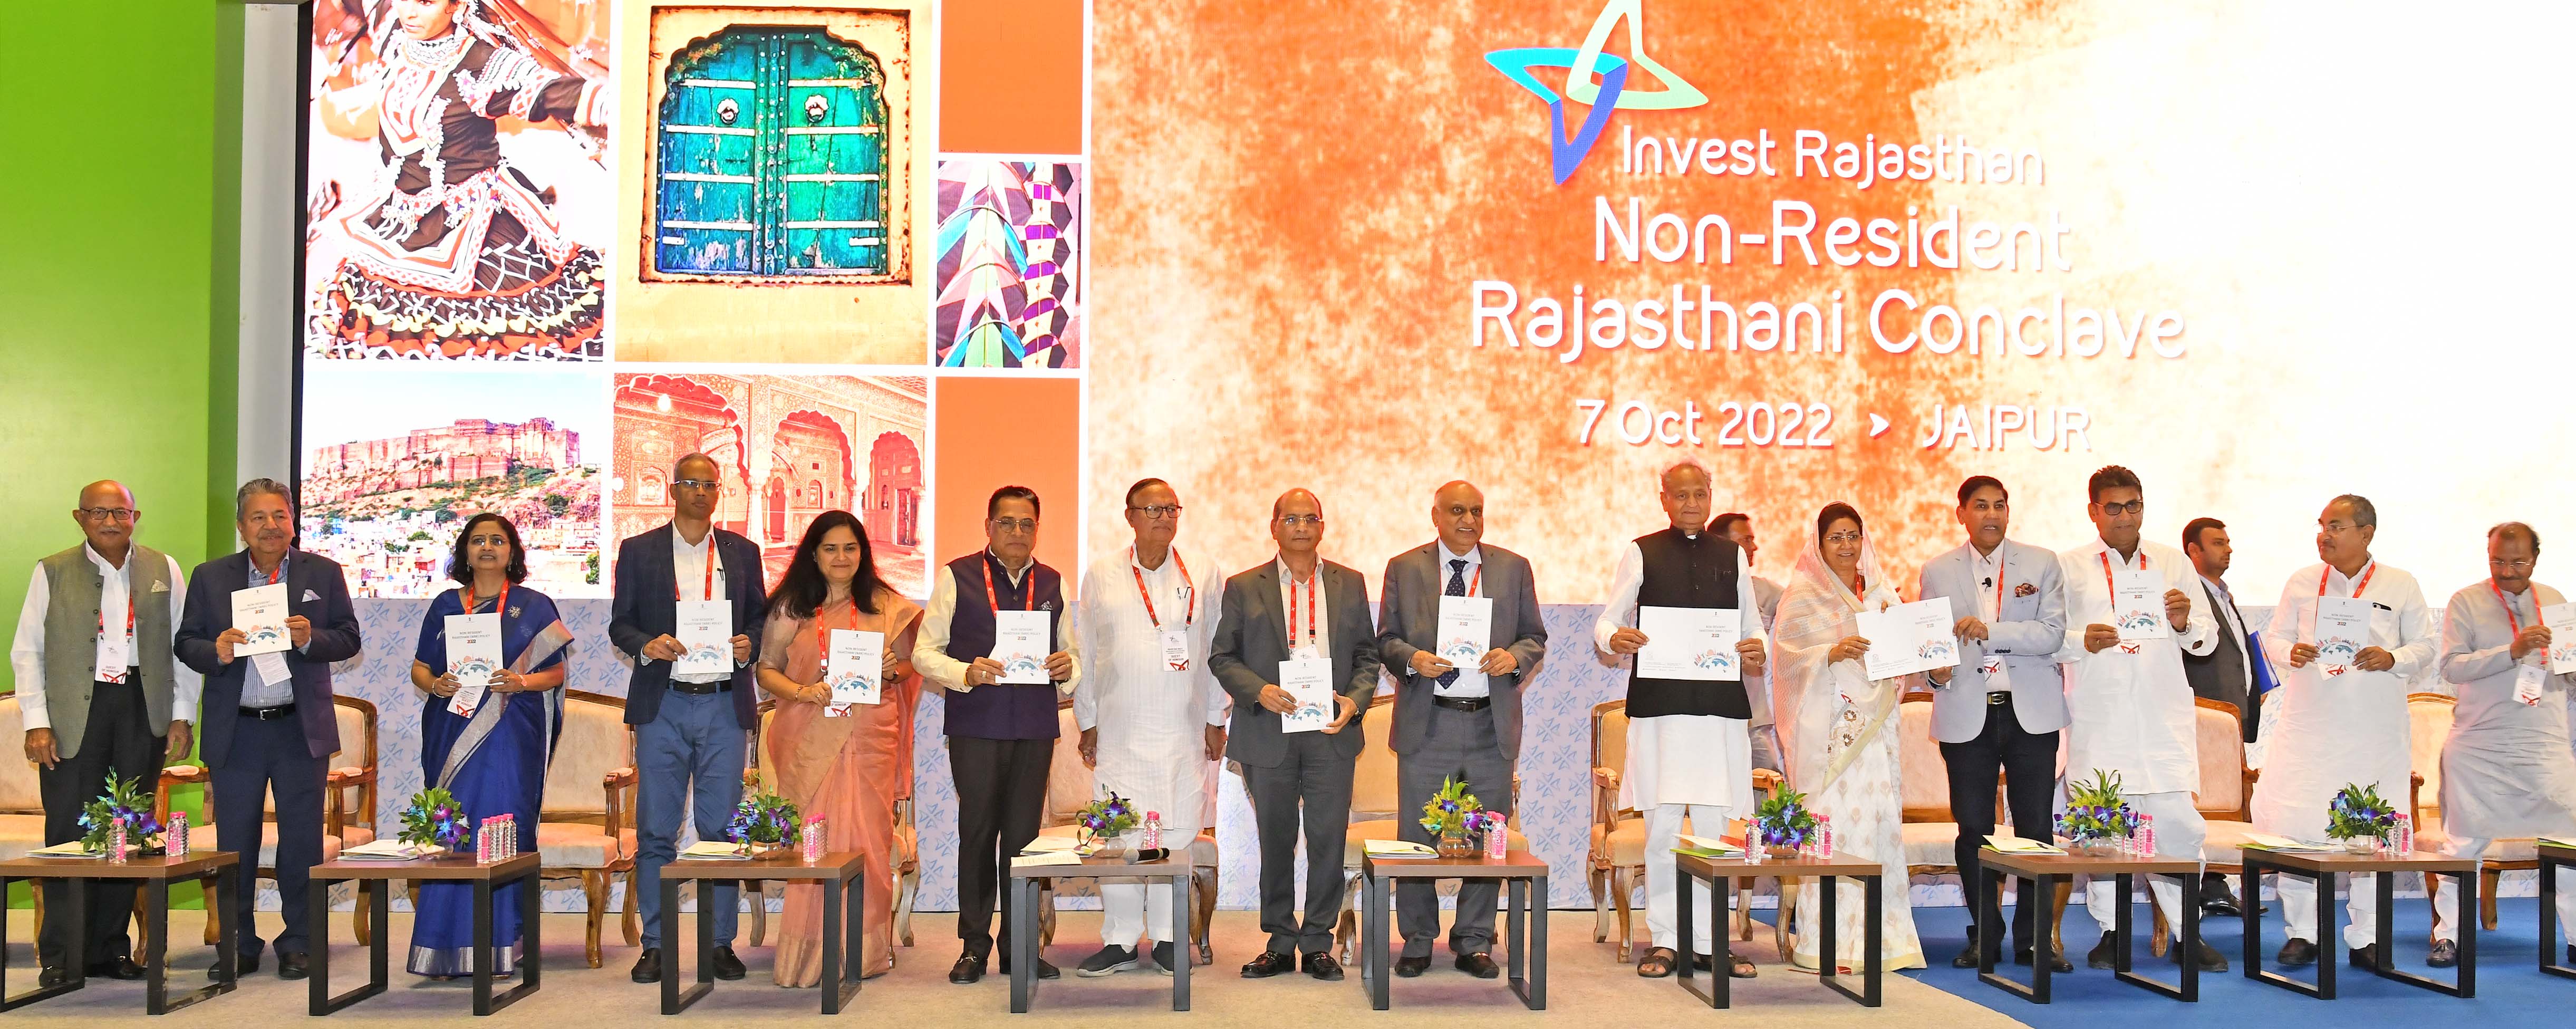 Investment Rajasthan - सीएम गहलोत ने की राज्य में एनआरआर पॉलिसी लॉन्च